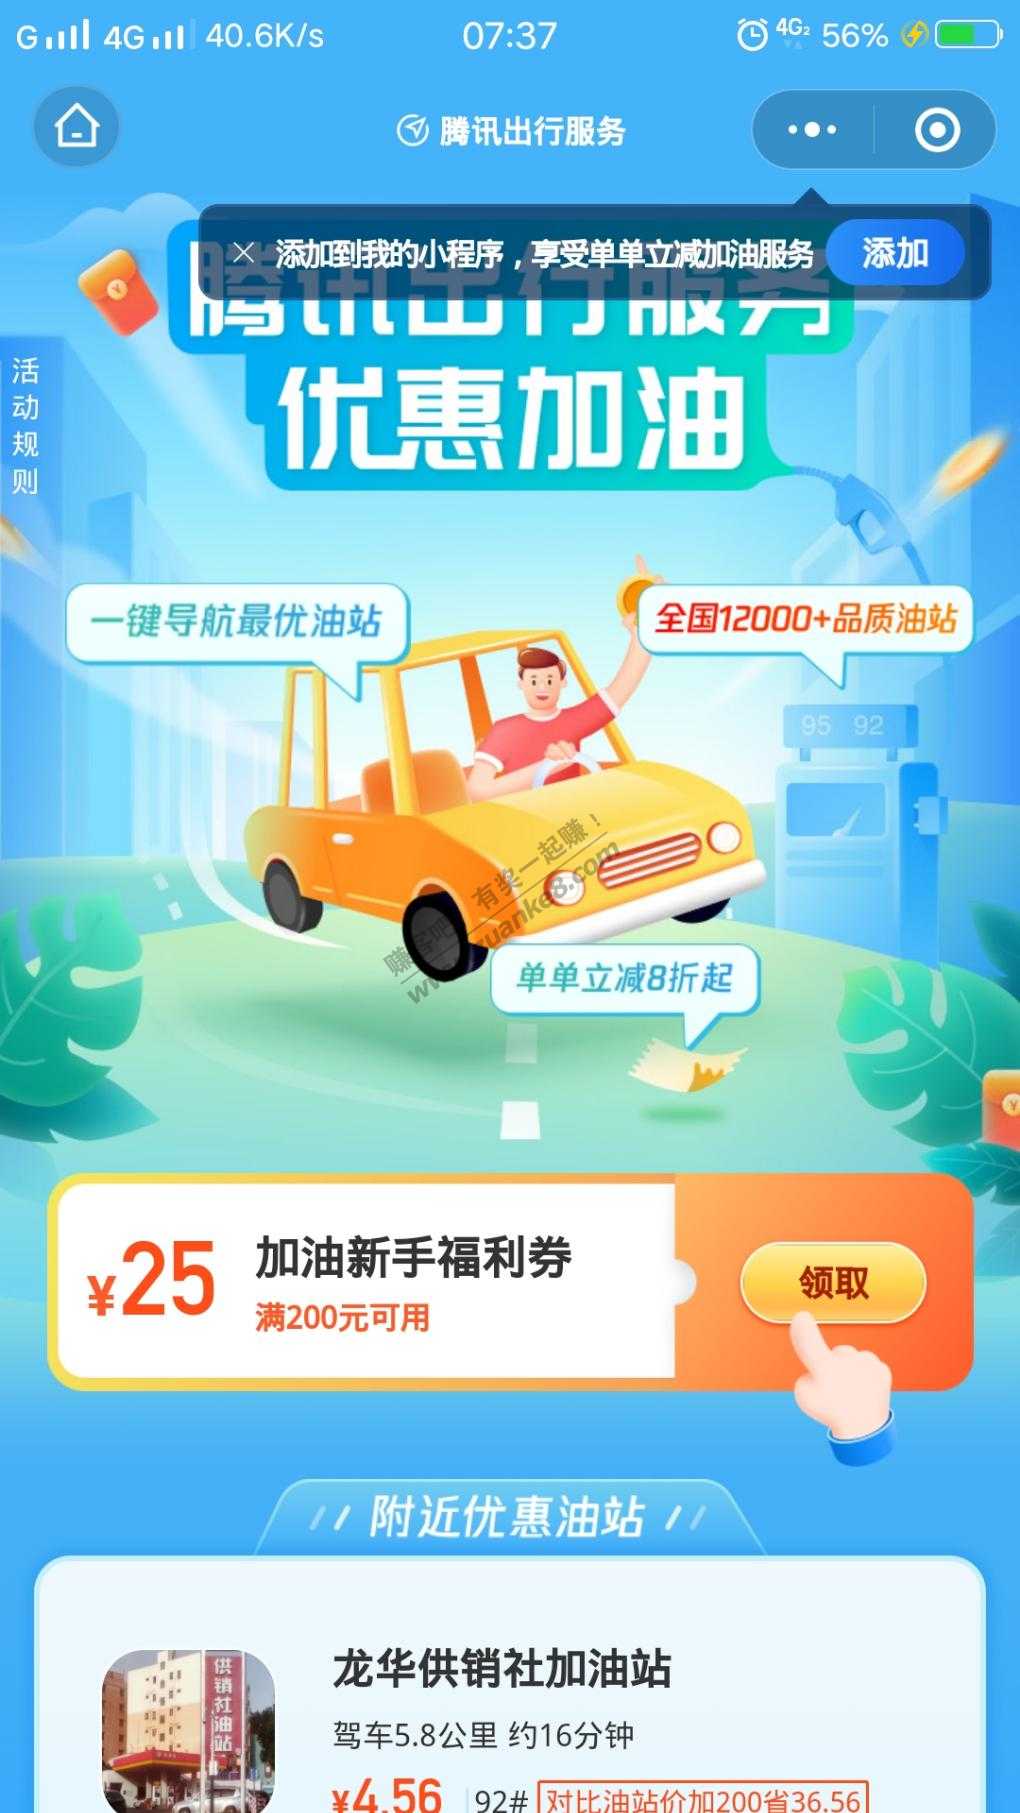 腾讯出行服务 25元加油券-惠小助(52huixz.com)